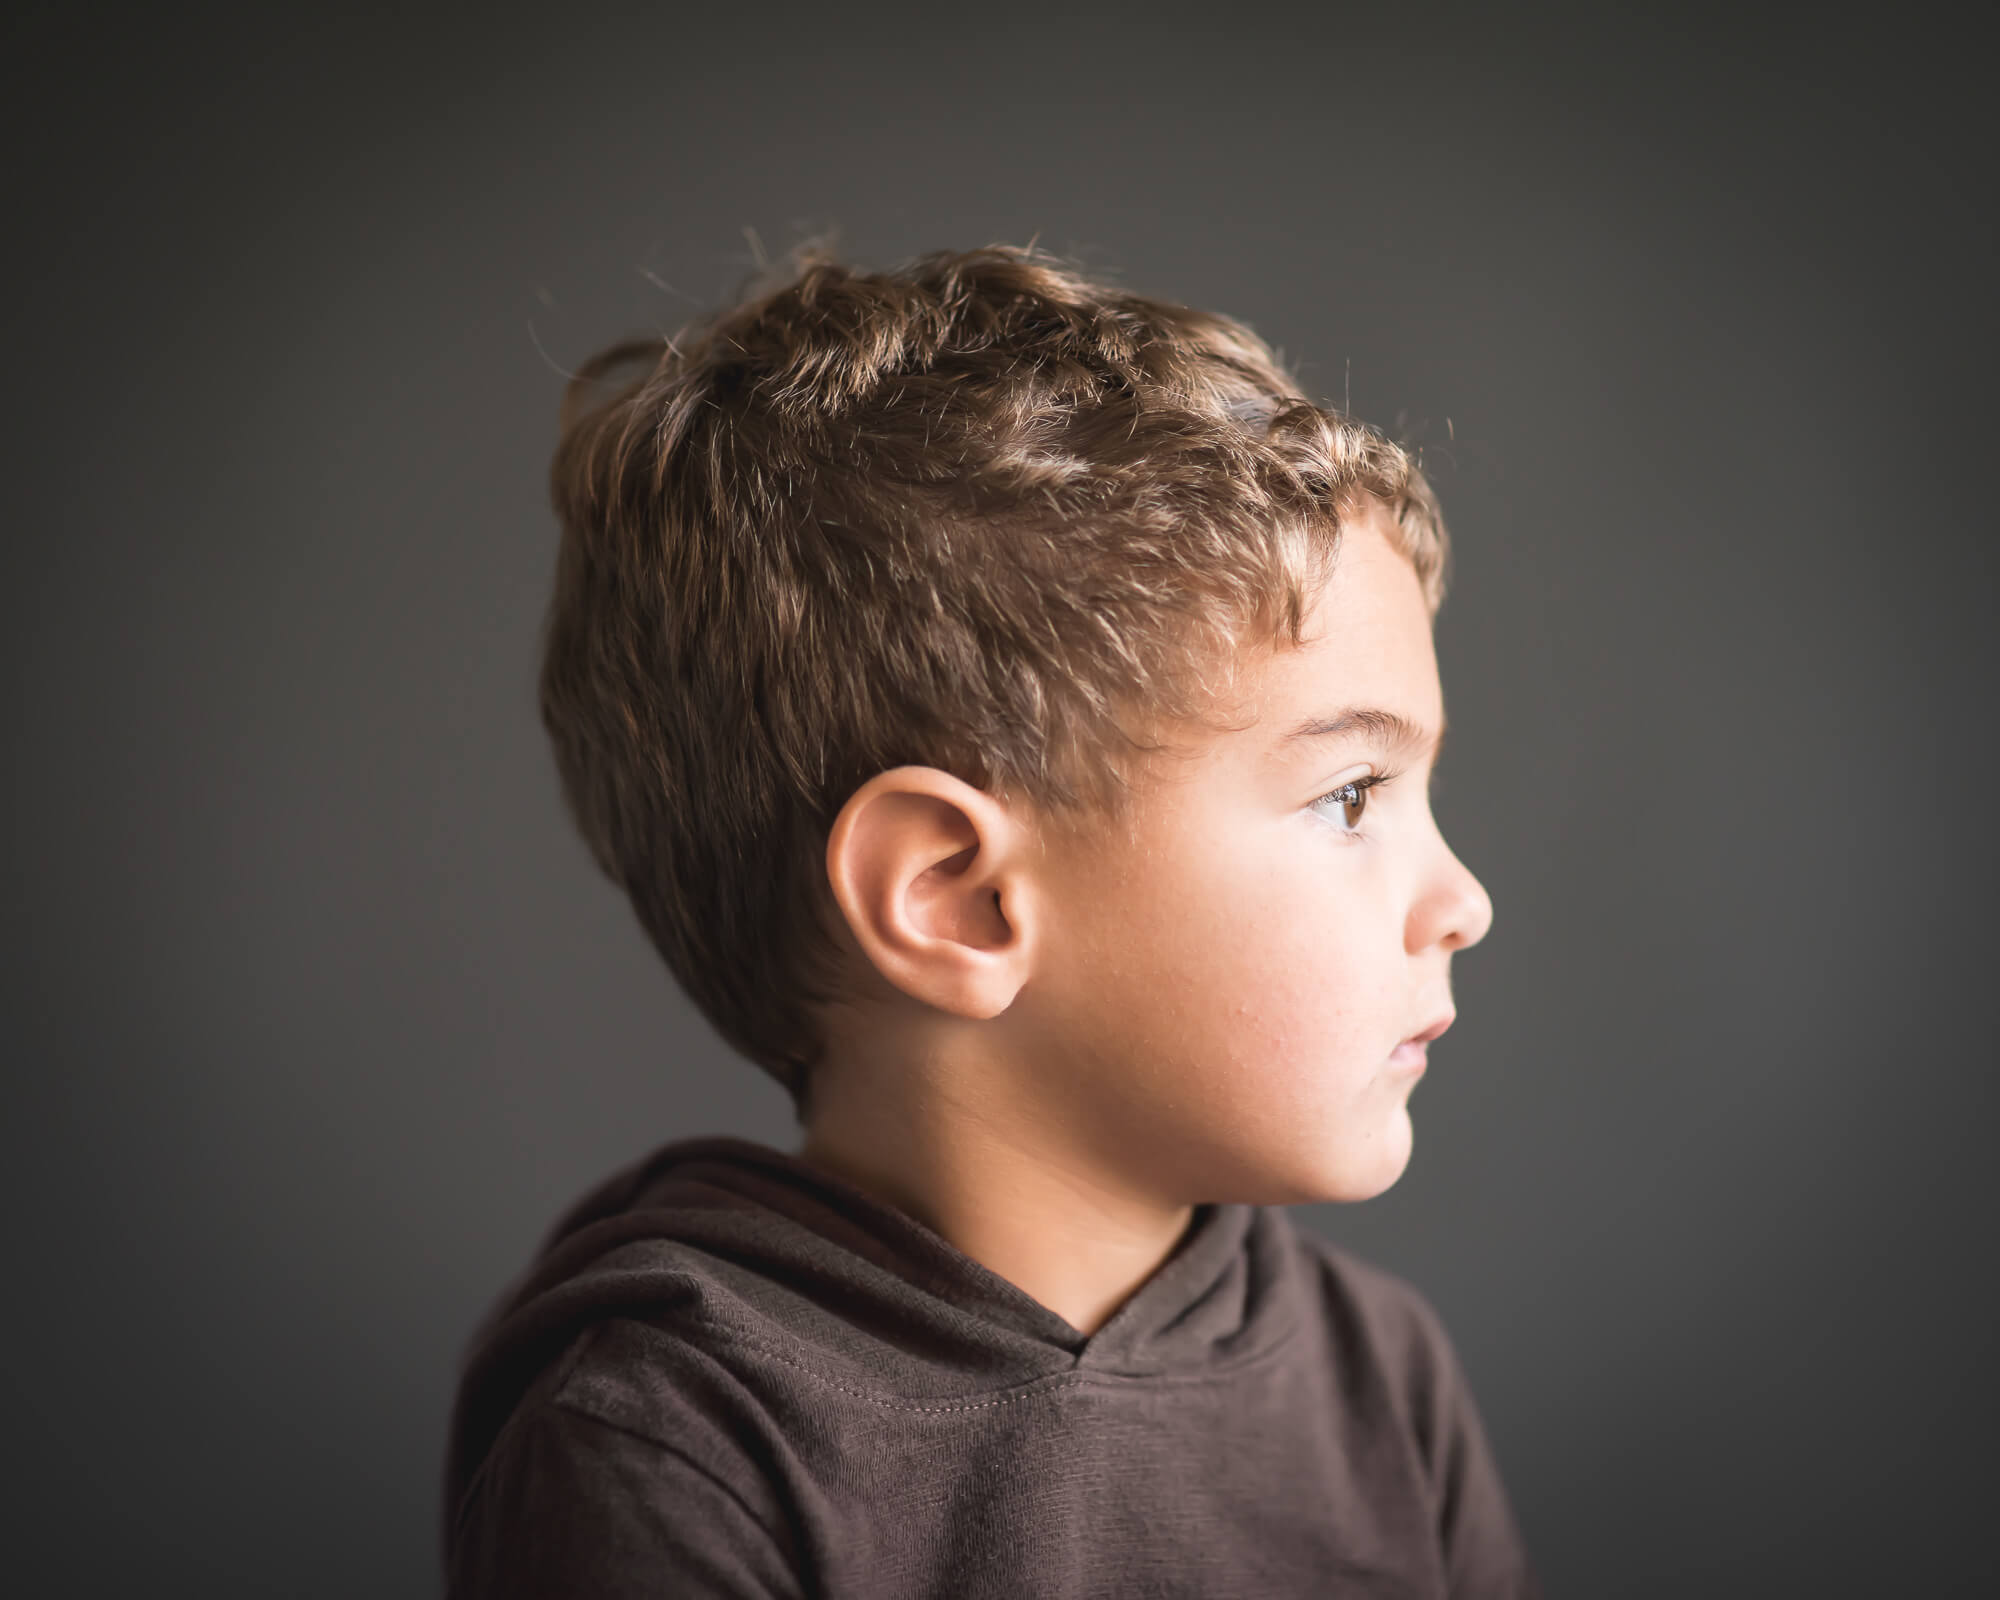 small boy profile in studio portrait